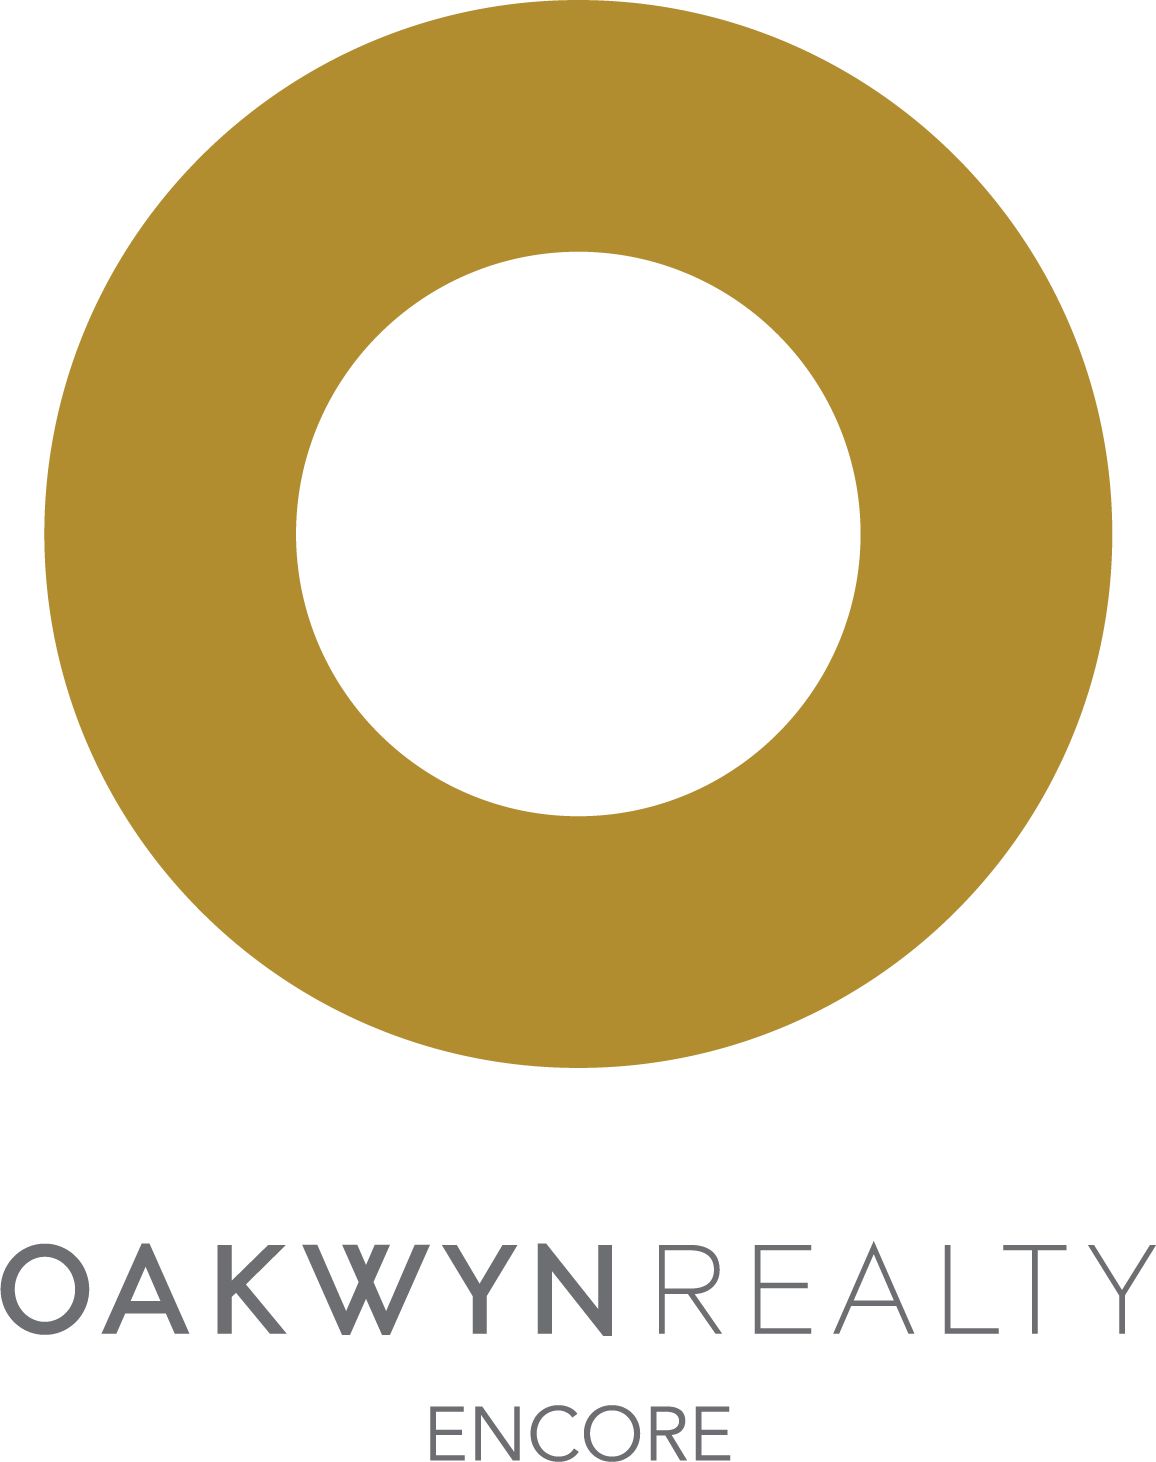 Oakwyn Realty Encore